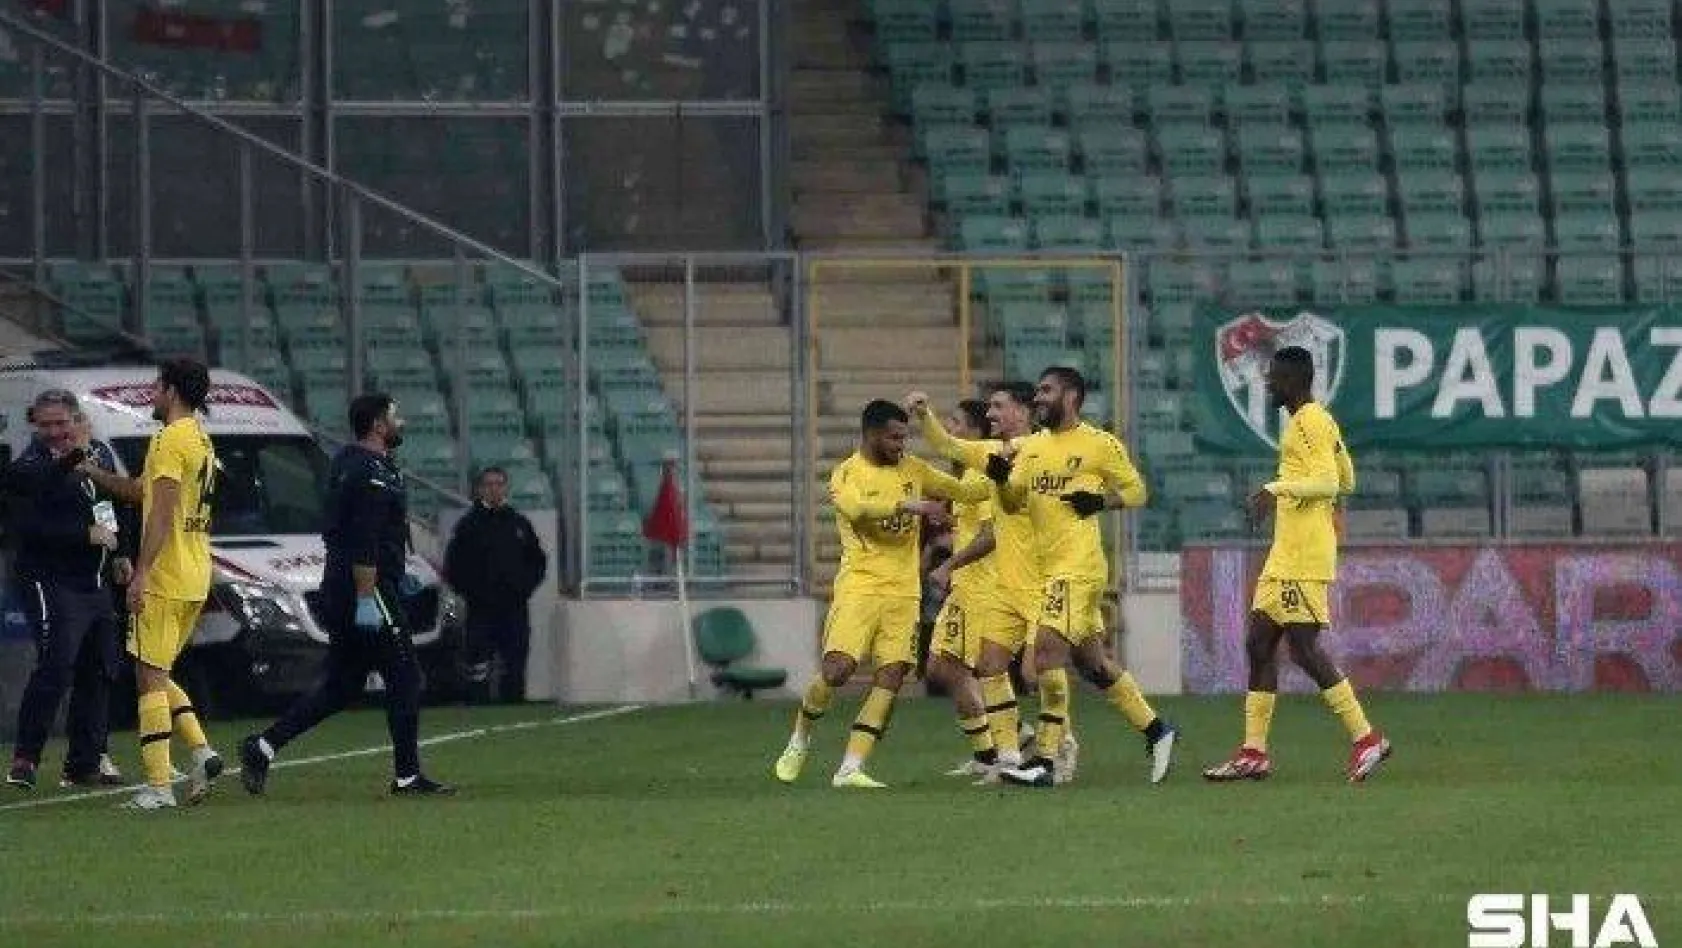 Spor Toto 1. Lig: Bursaspor: 1 - İstanbulspor: 3 (İlk yarı sonucu)